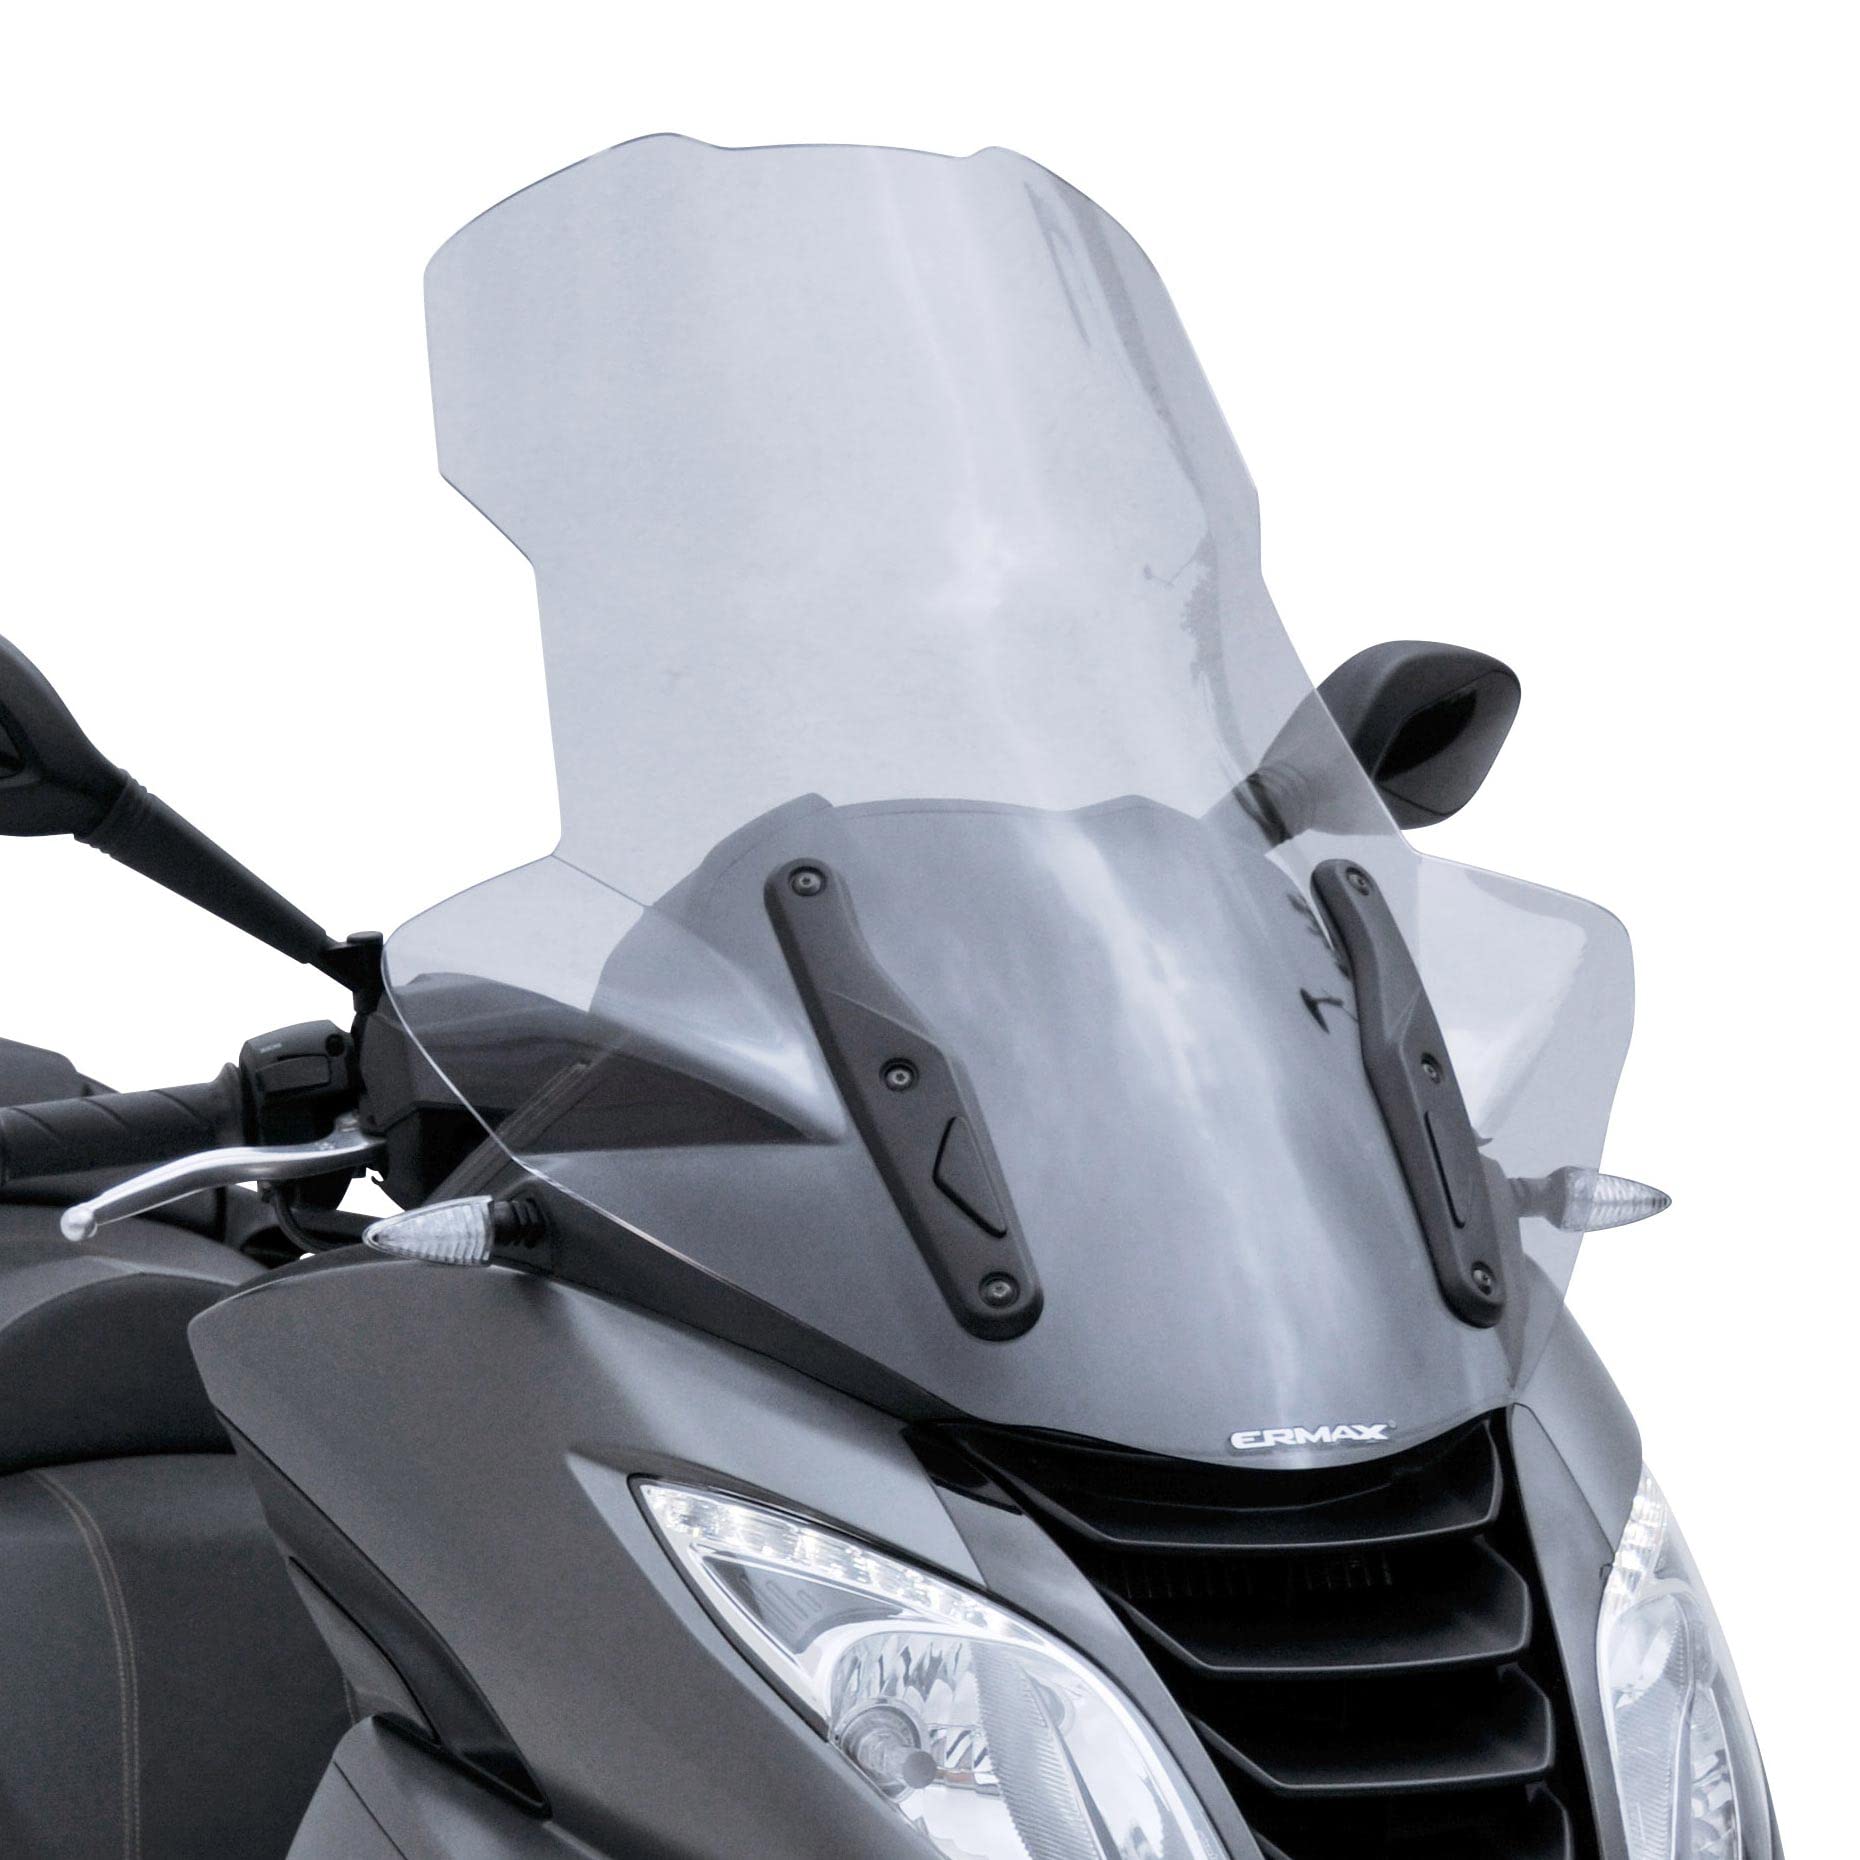 Scooter Windschutzscheibe mit hohem Schutz (70 cm + Armschutz) Ermax kompatibel mit Metropolis 400i 2021-2022 transparent von 4moto